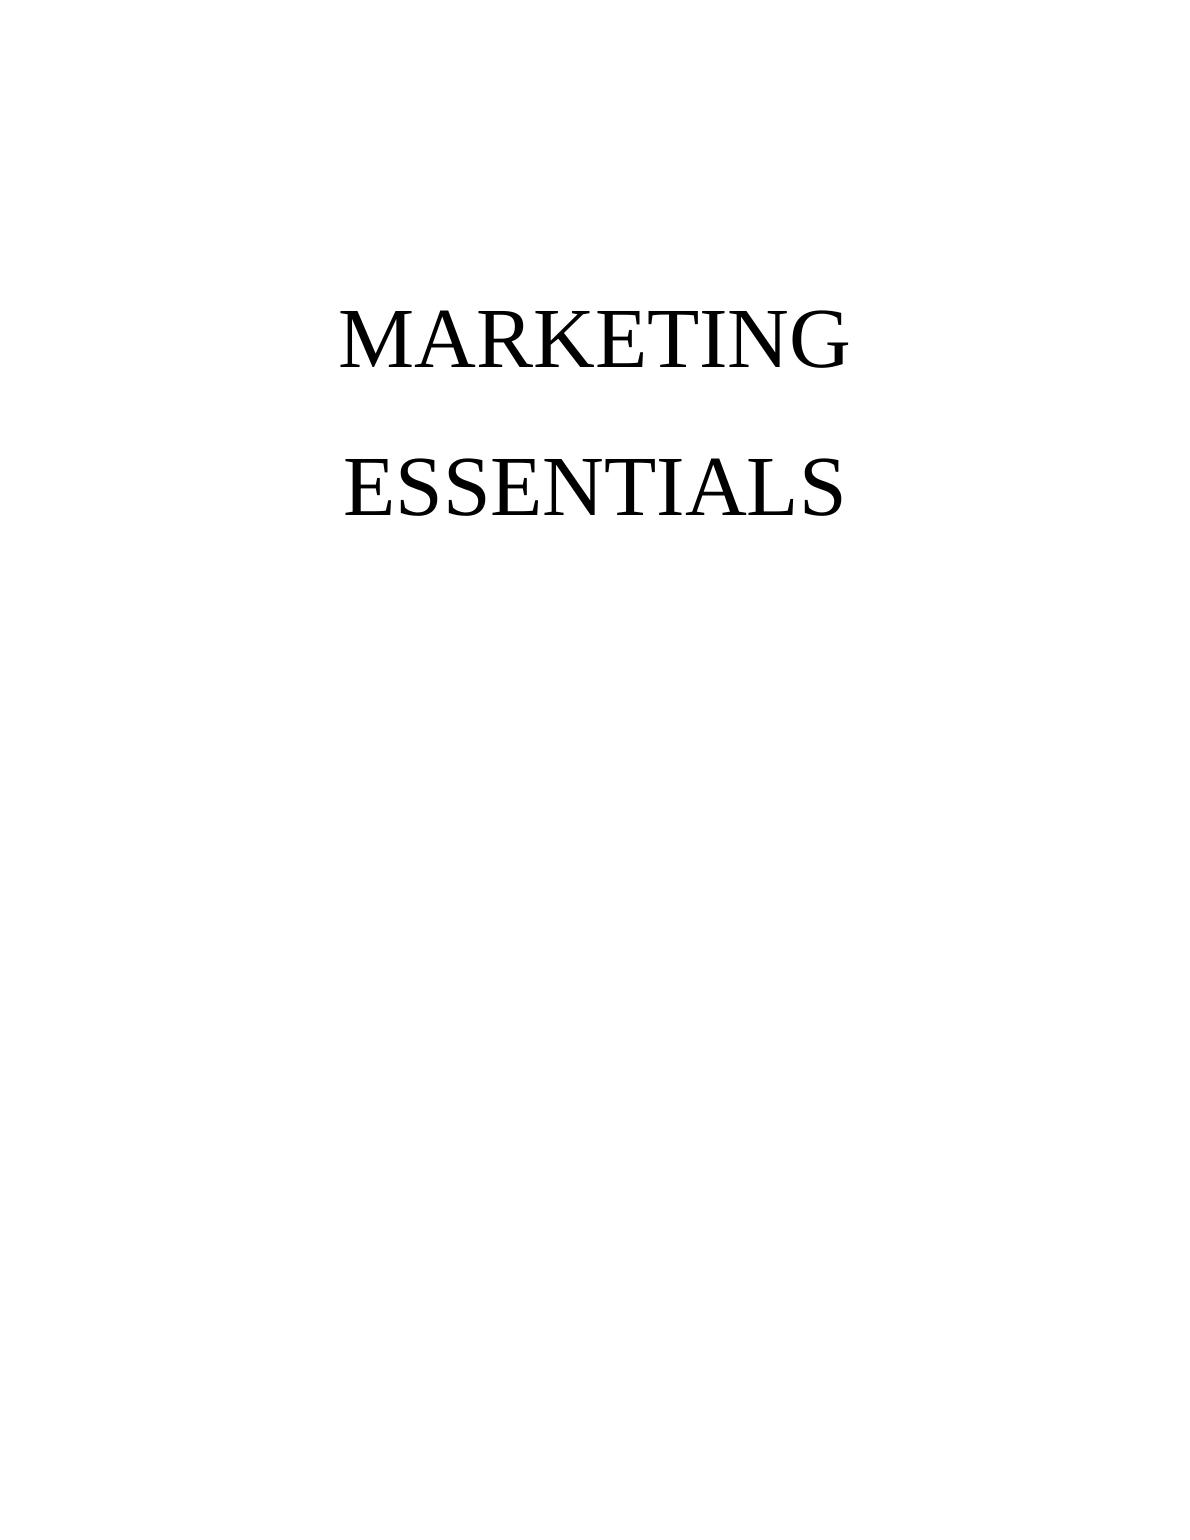 Marketing Essentials Assignment | ZARA Company_1